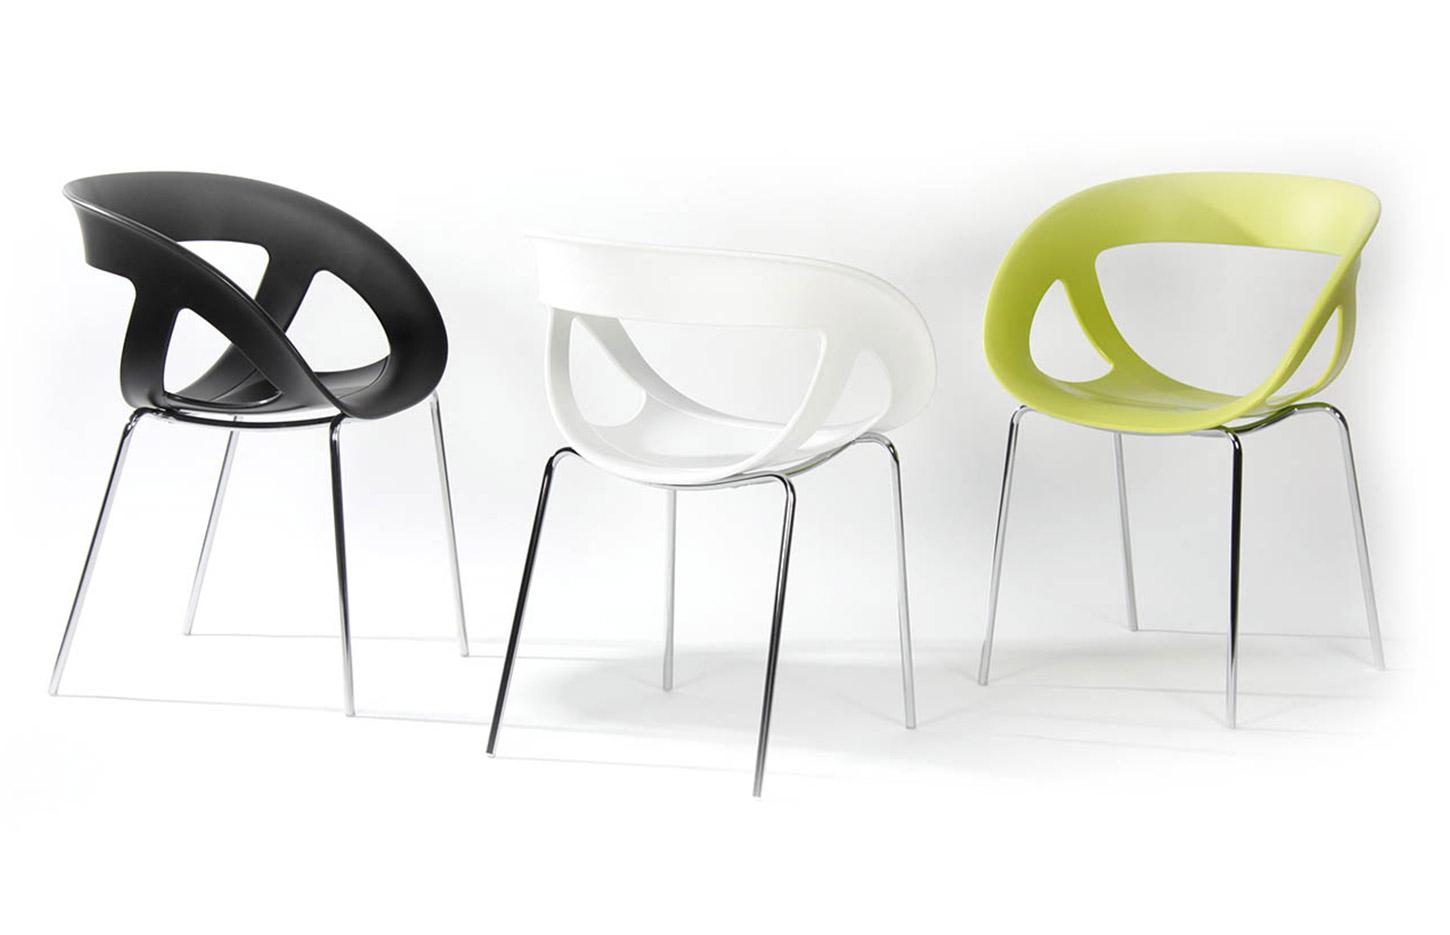 Chaise coque design ajourée polypropylène et structure chromé, gamme Helena, France Bureau